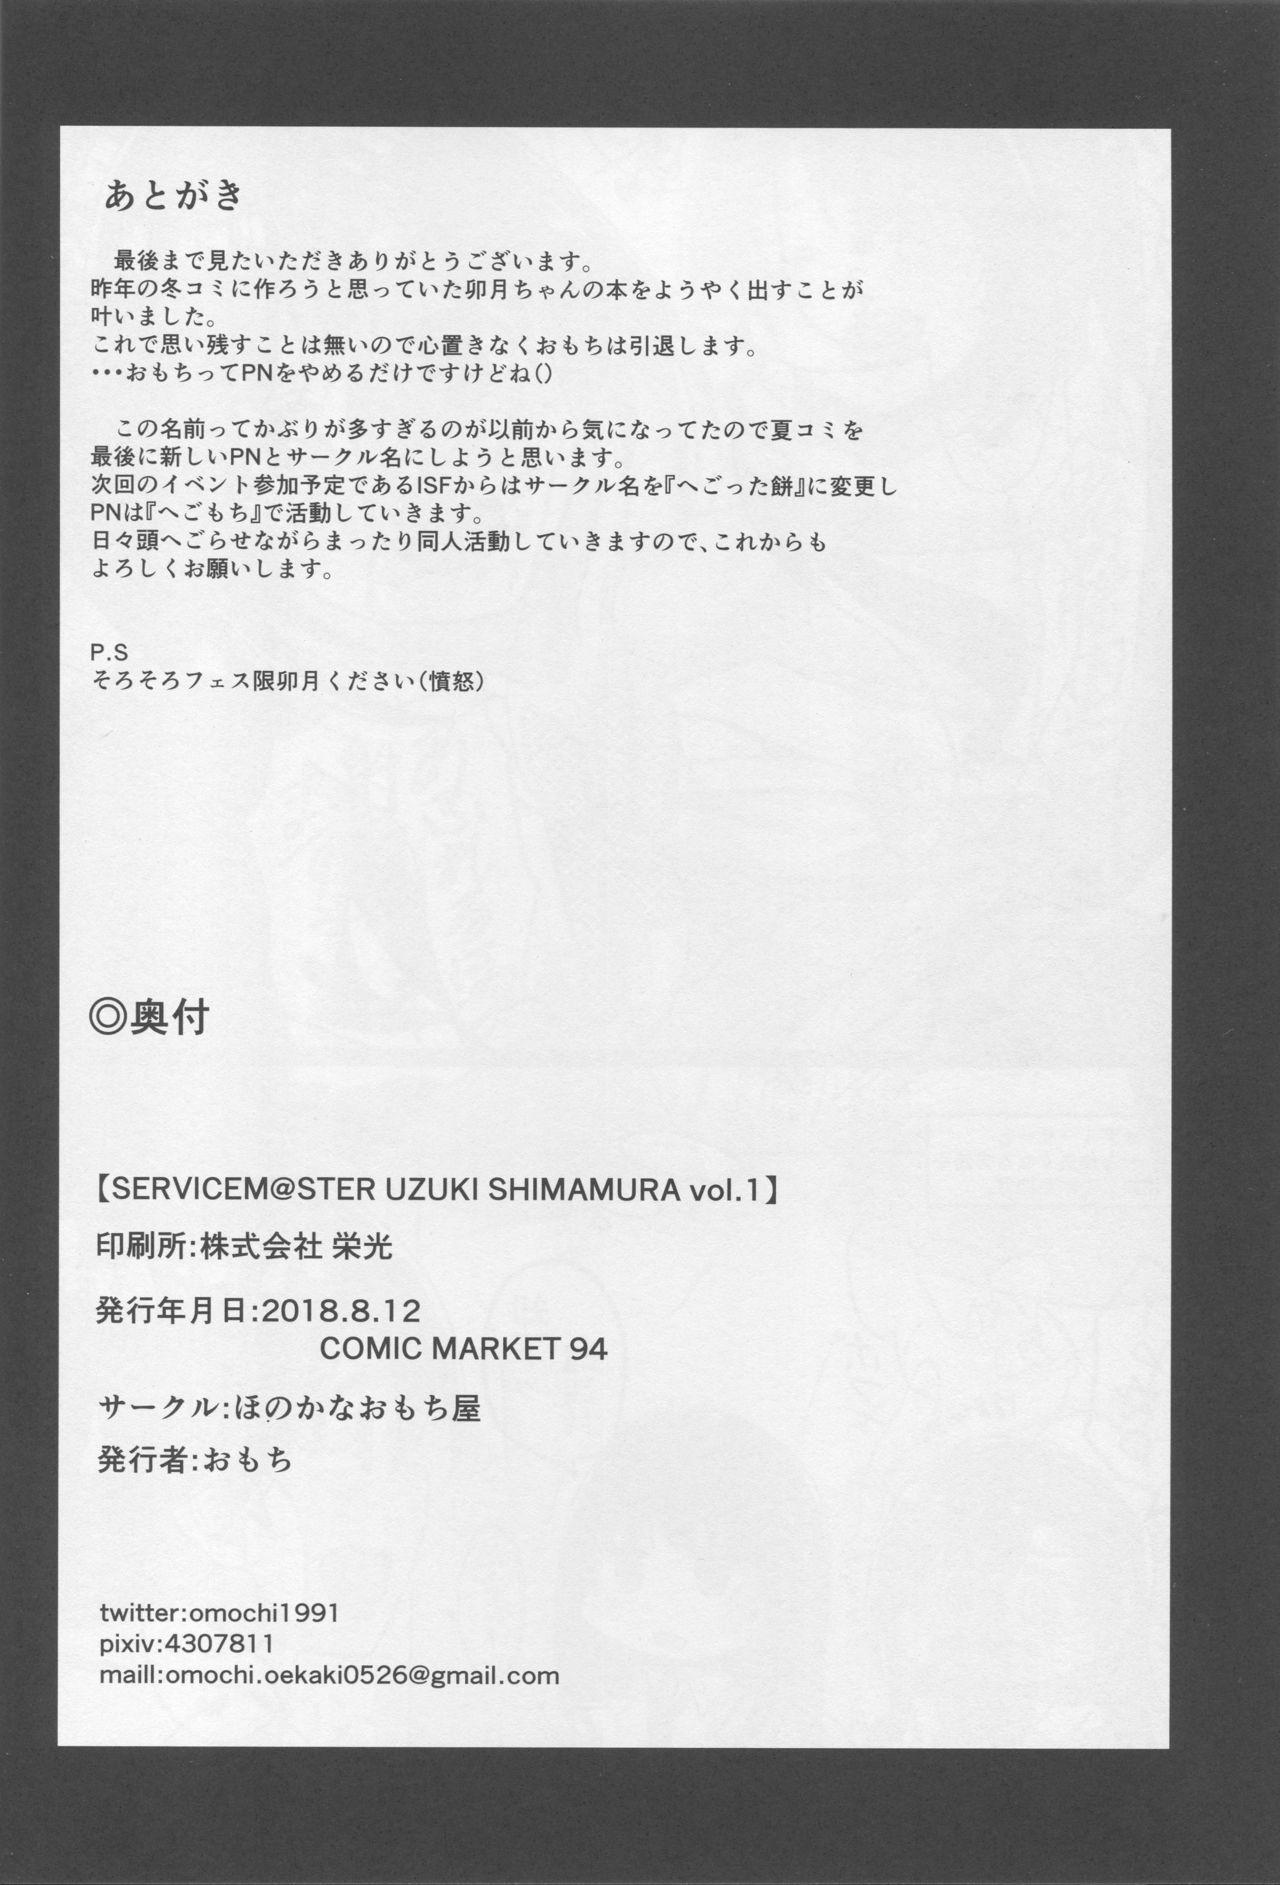 SERVICEM@STER UZUKI SHIMAMURA Vol. 1 20